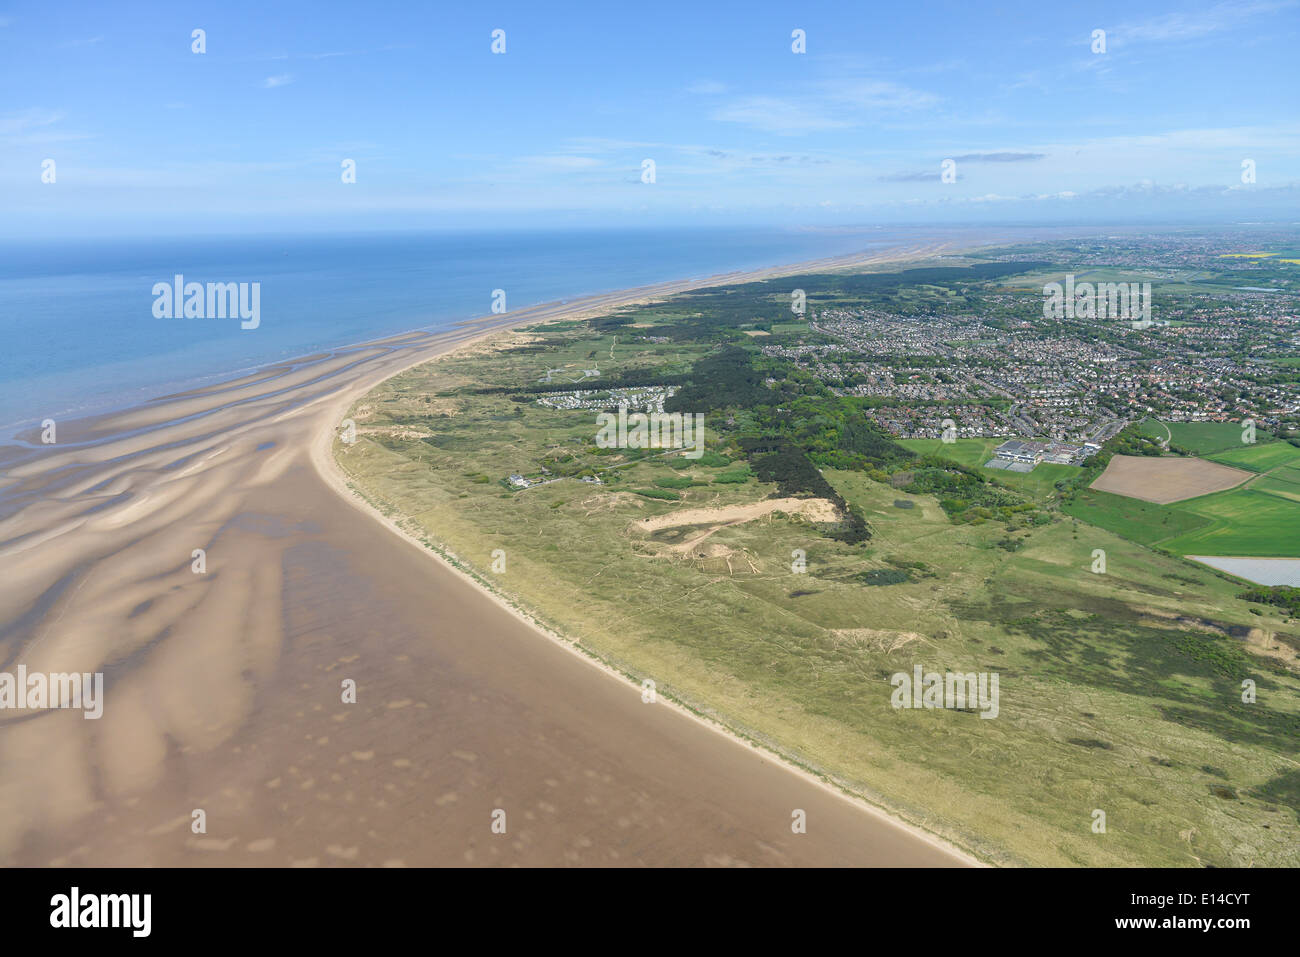 Une vue aérienne à la recherche de la côte vers le nord, avec une partie du Lancashire Formby visible. Banque D'Images